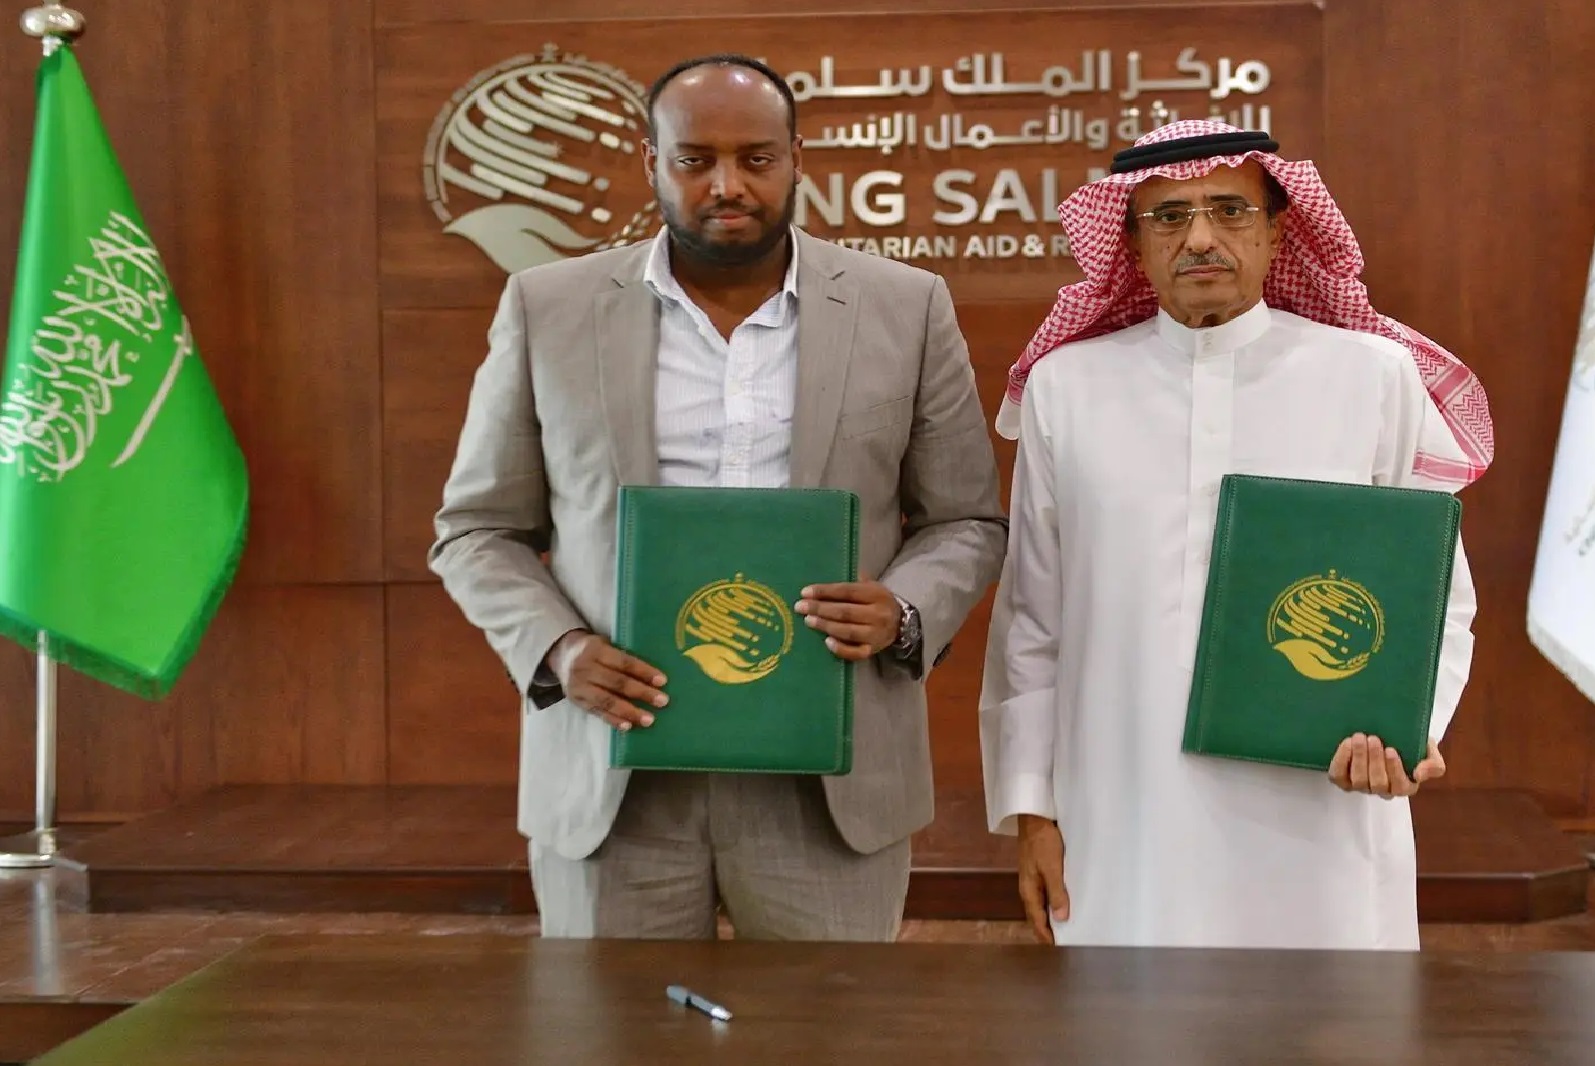 مركز الملك سلمان للإغاثة يوقع اتفاقية تعاون مشتركة مع المجلس النرويجي للاجئين لدعم معهد برعو التقني في الصومال